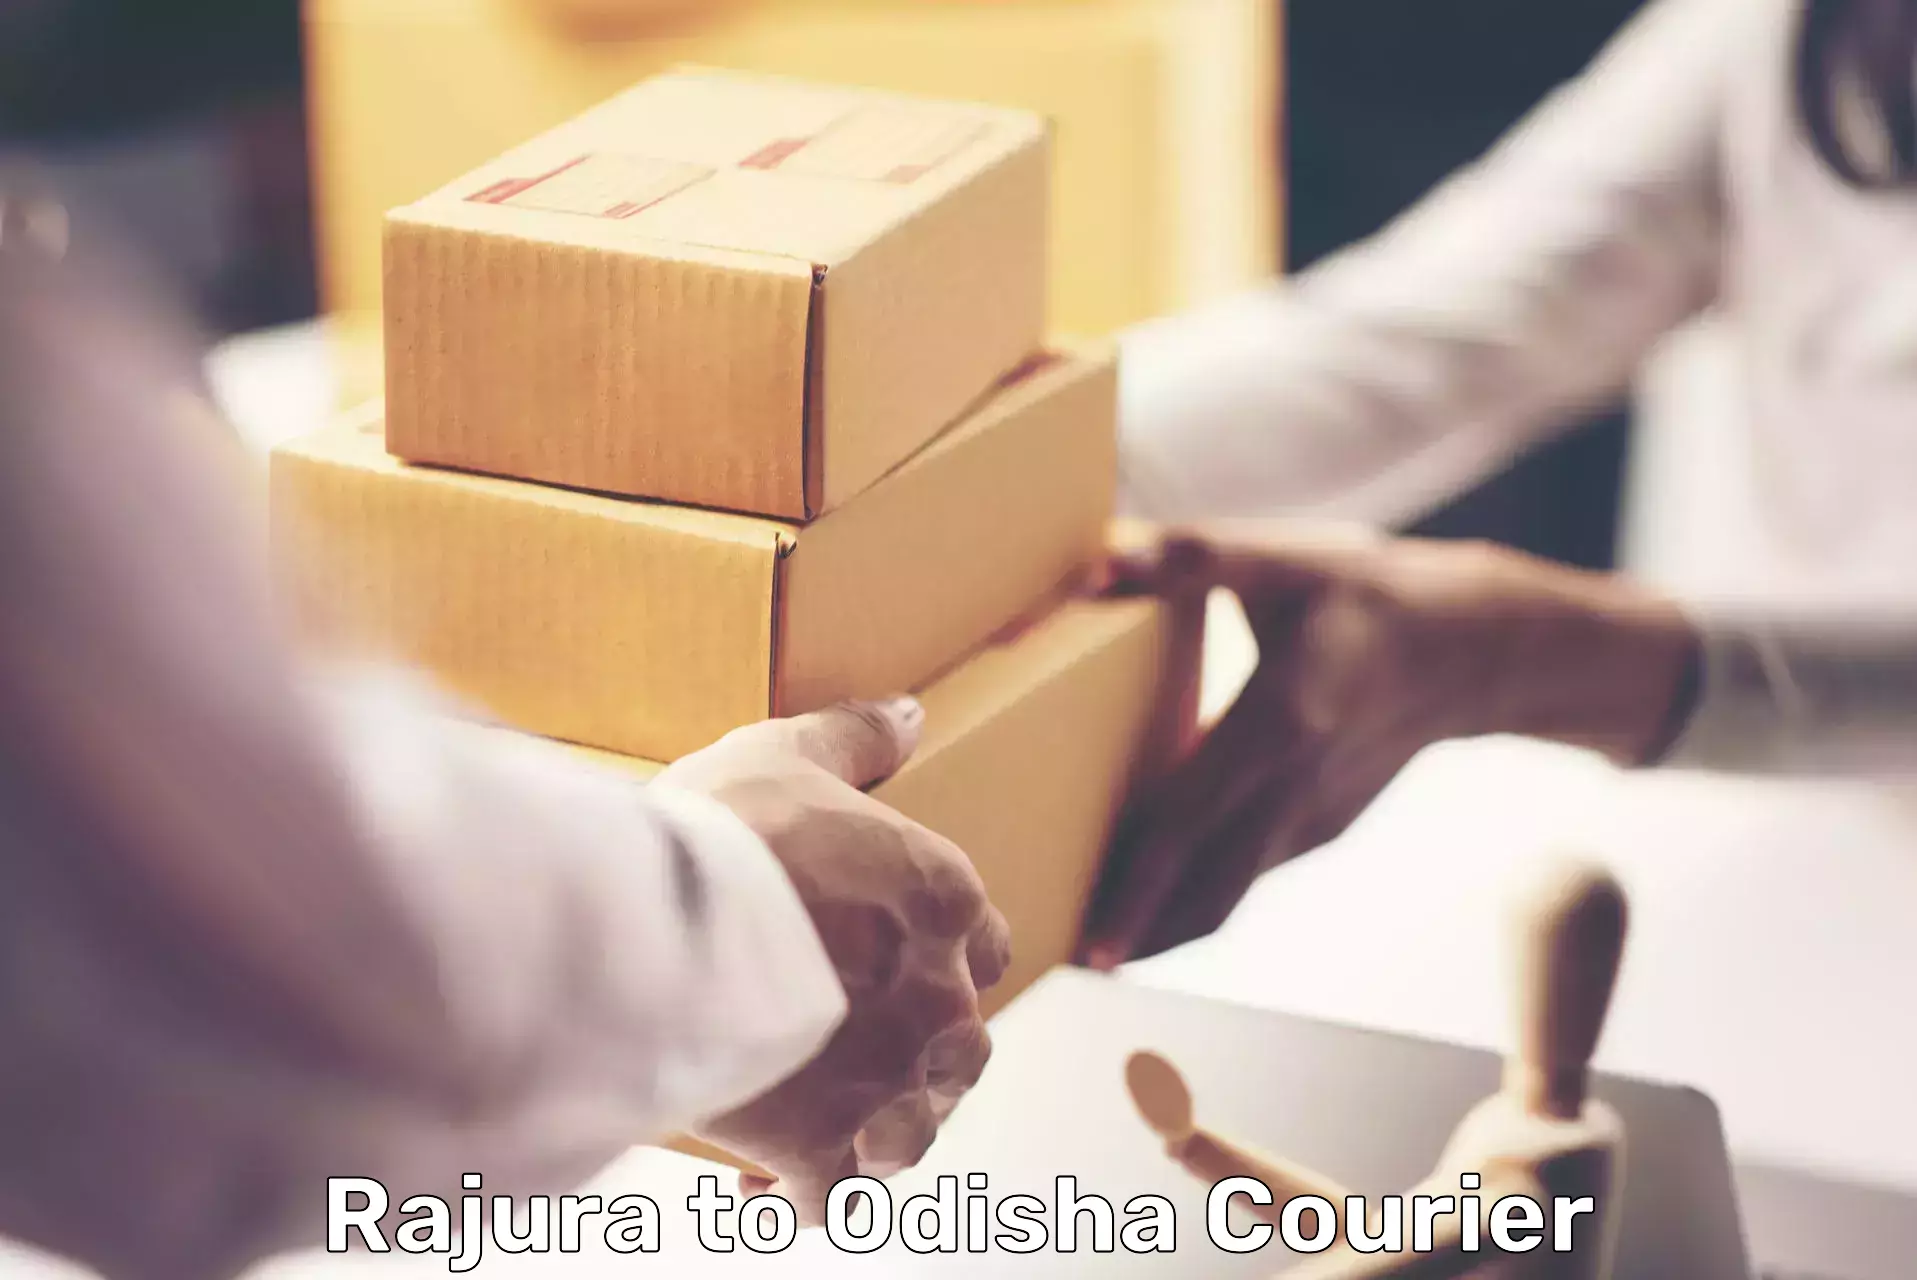 Personal parcel delivery Rajura to Dhamanagar